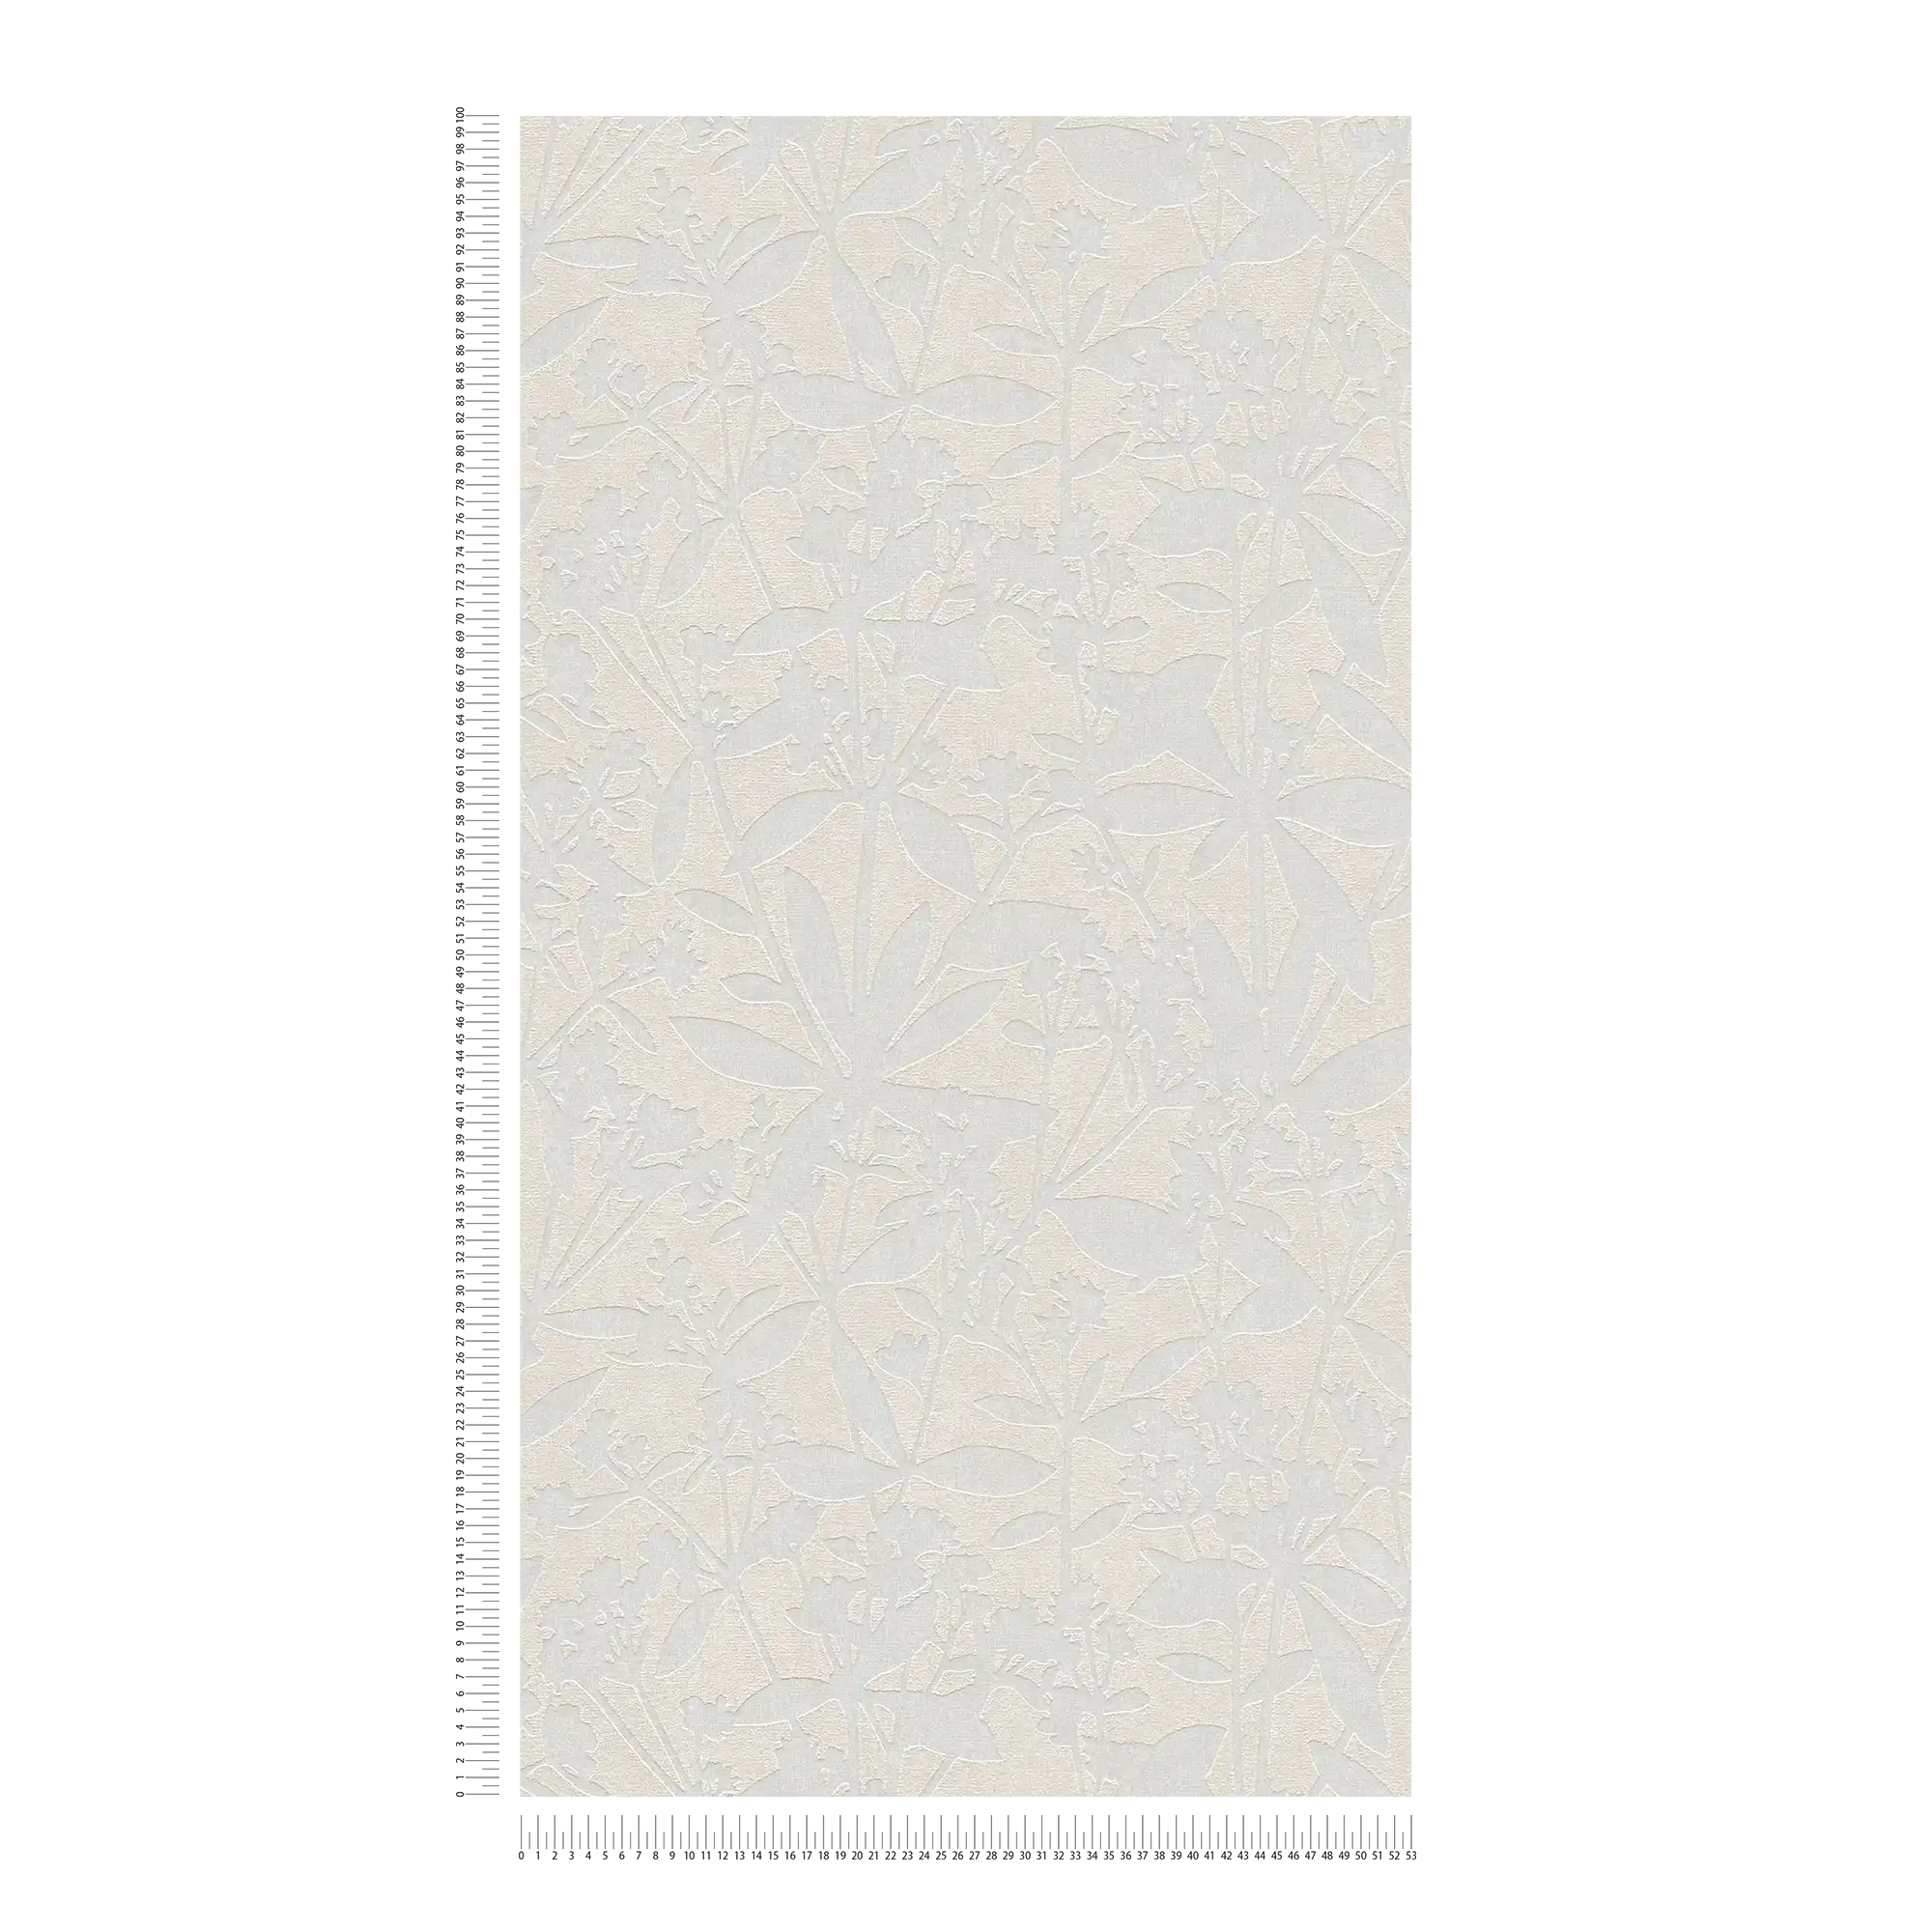             Bloemrijkvliesbehang met bloemenstructuur - crème, wit
        